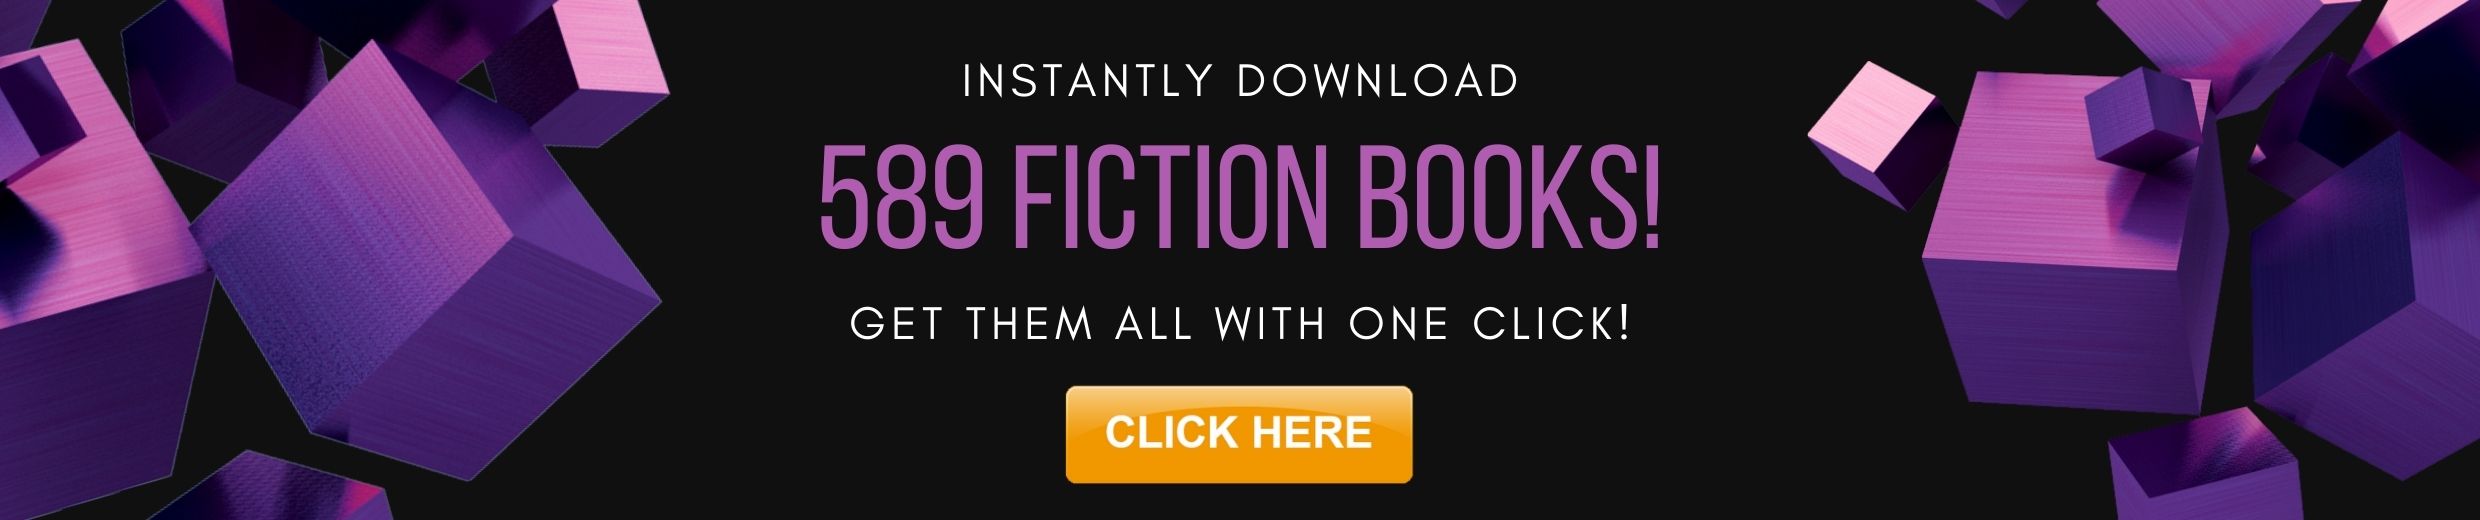 fiction books pdf free download